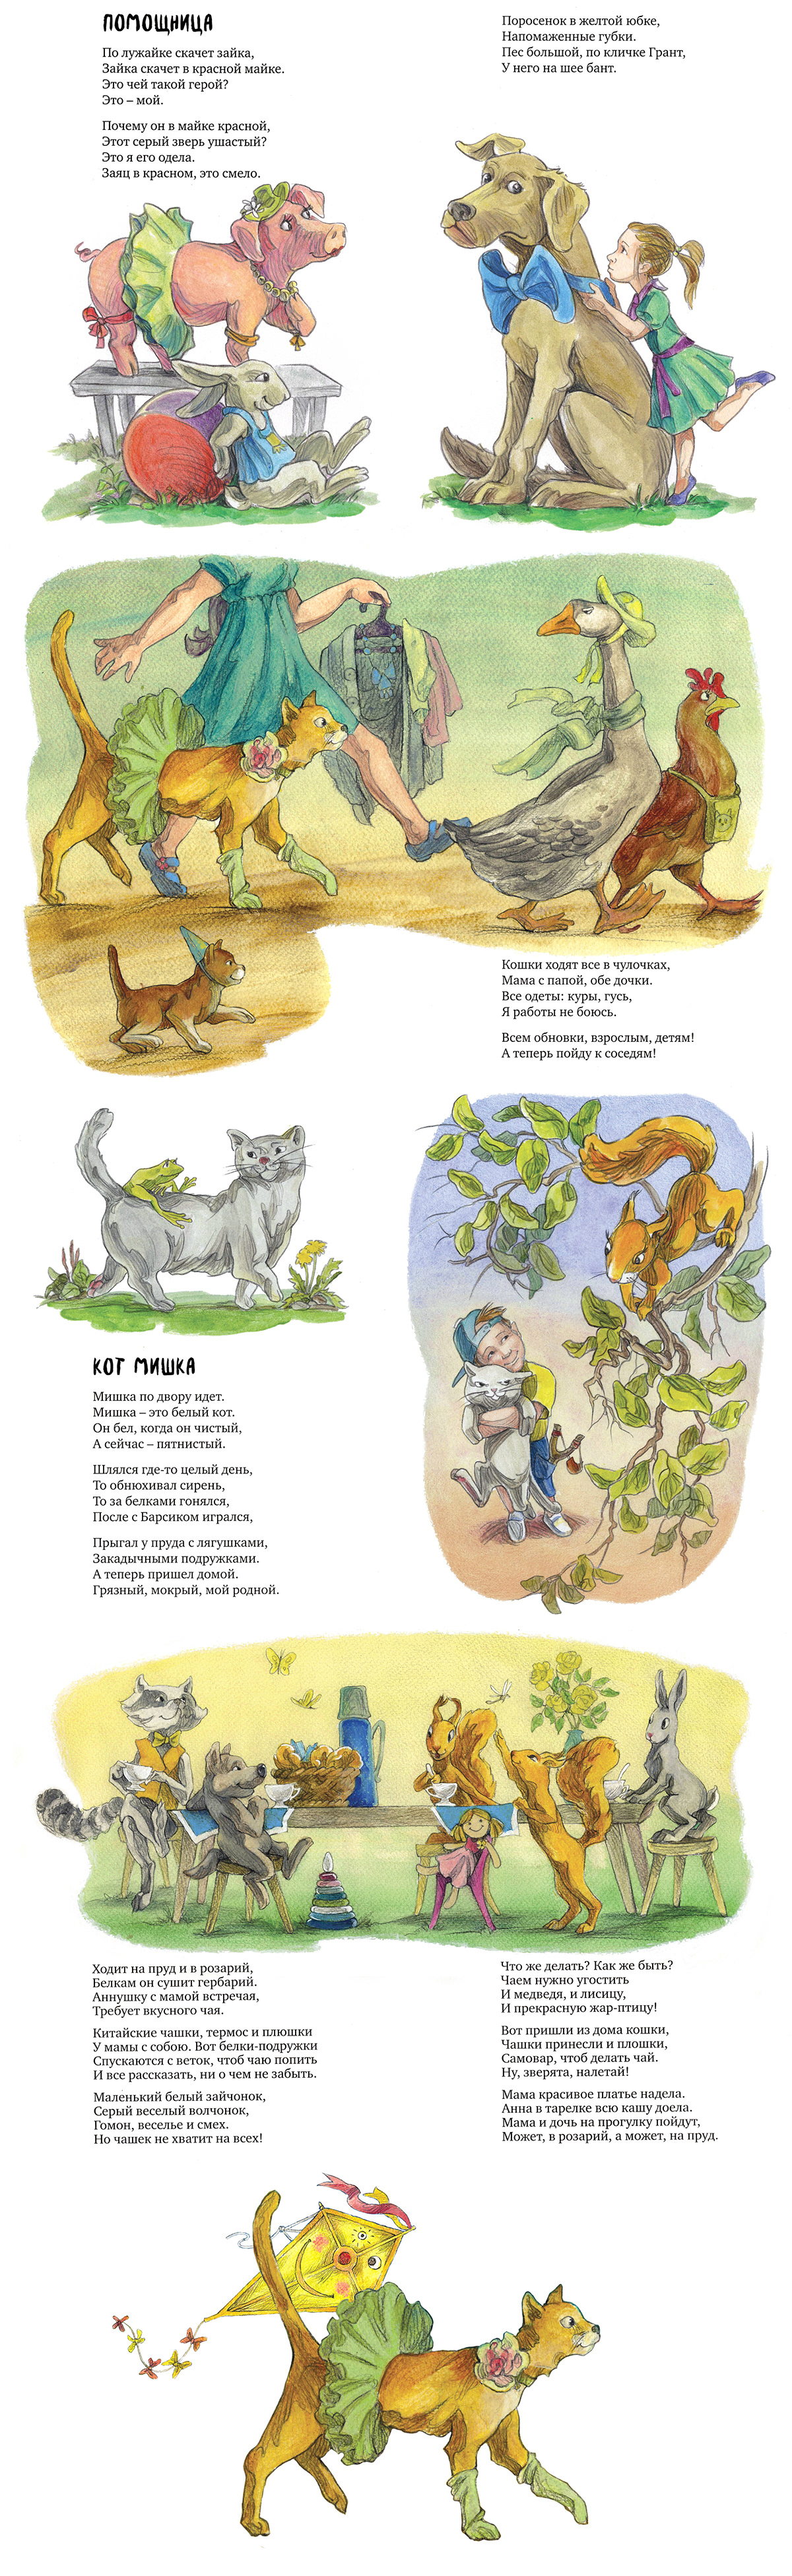 Poems illustrations for children book